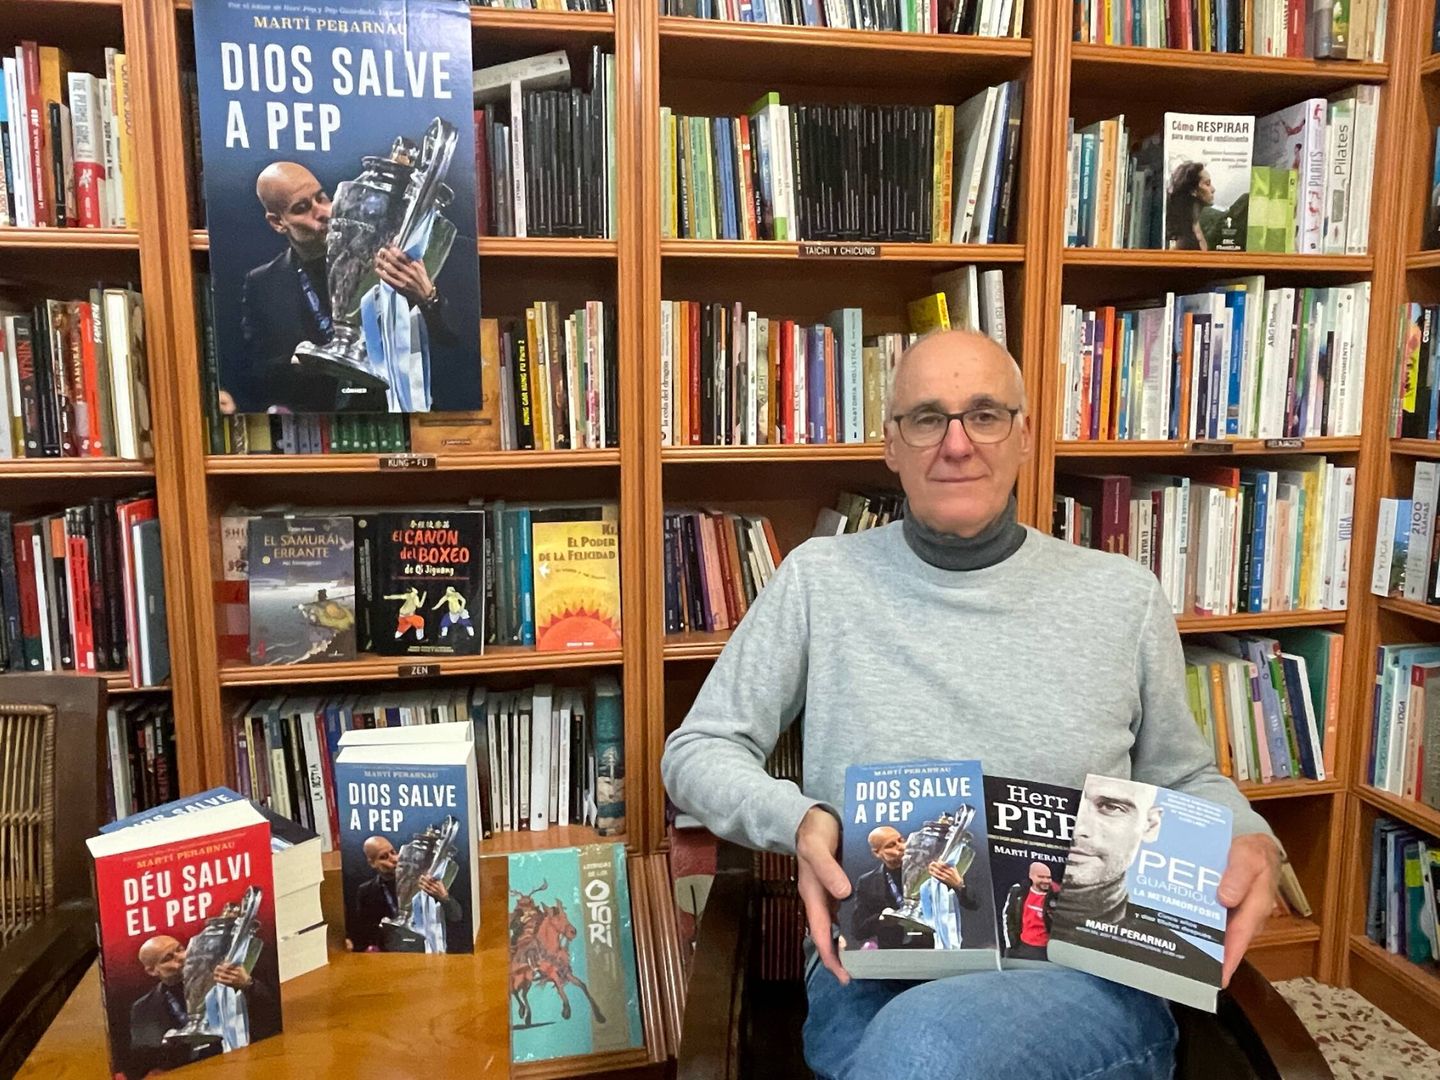 Martí Perarnau con sus tres libros sobre Pep Guardiola. (Foto KM)